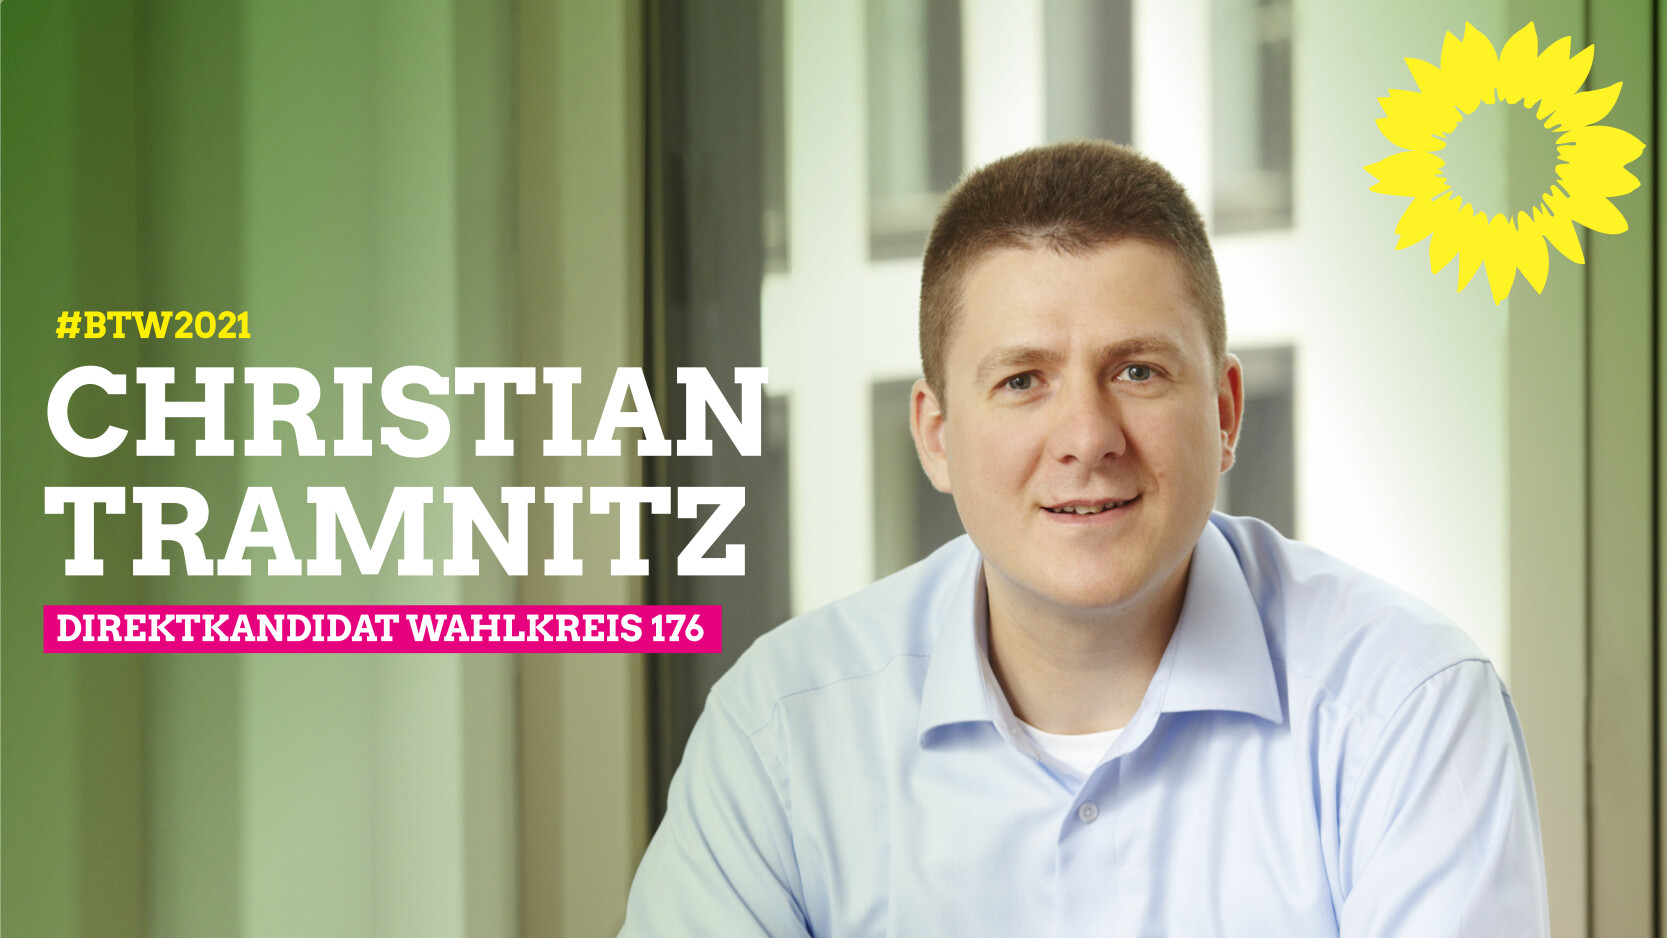 Christian Tramnitz - Direktkandidat Wahlkreis 176